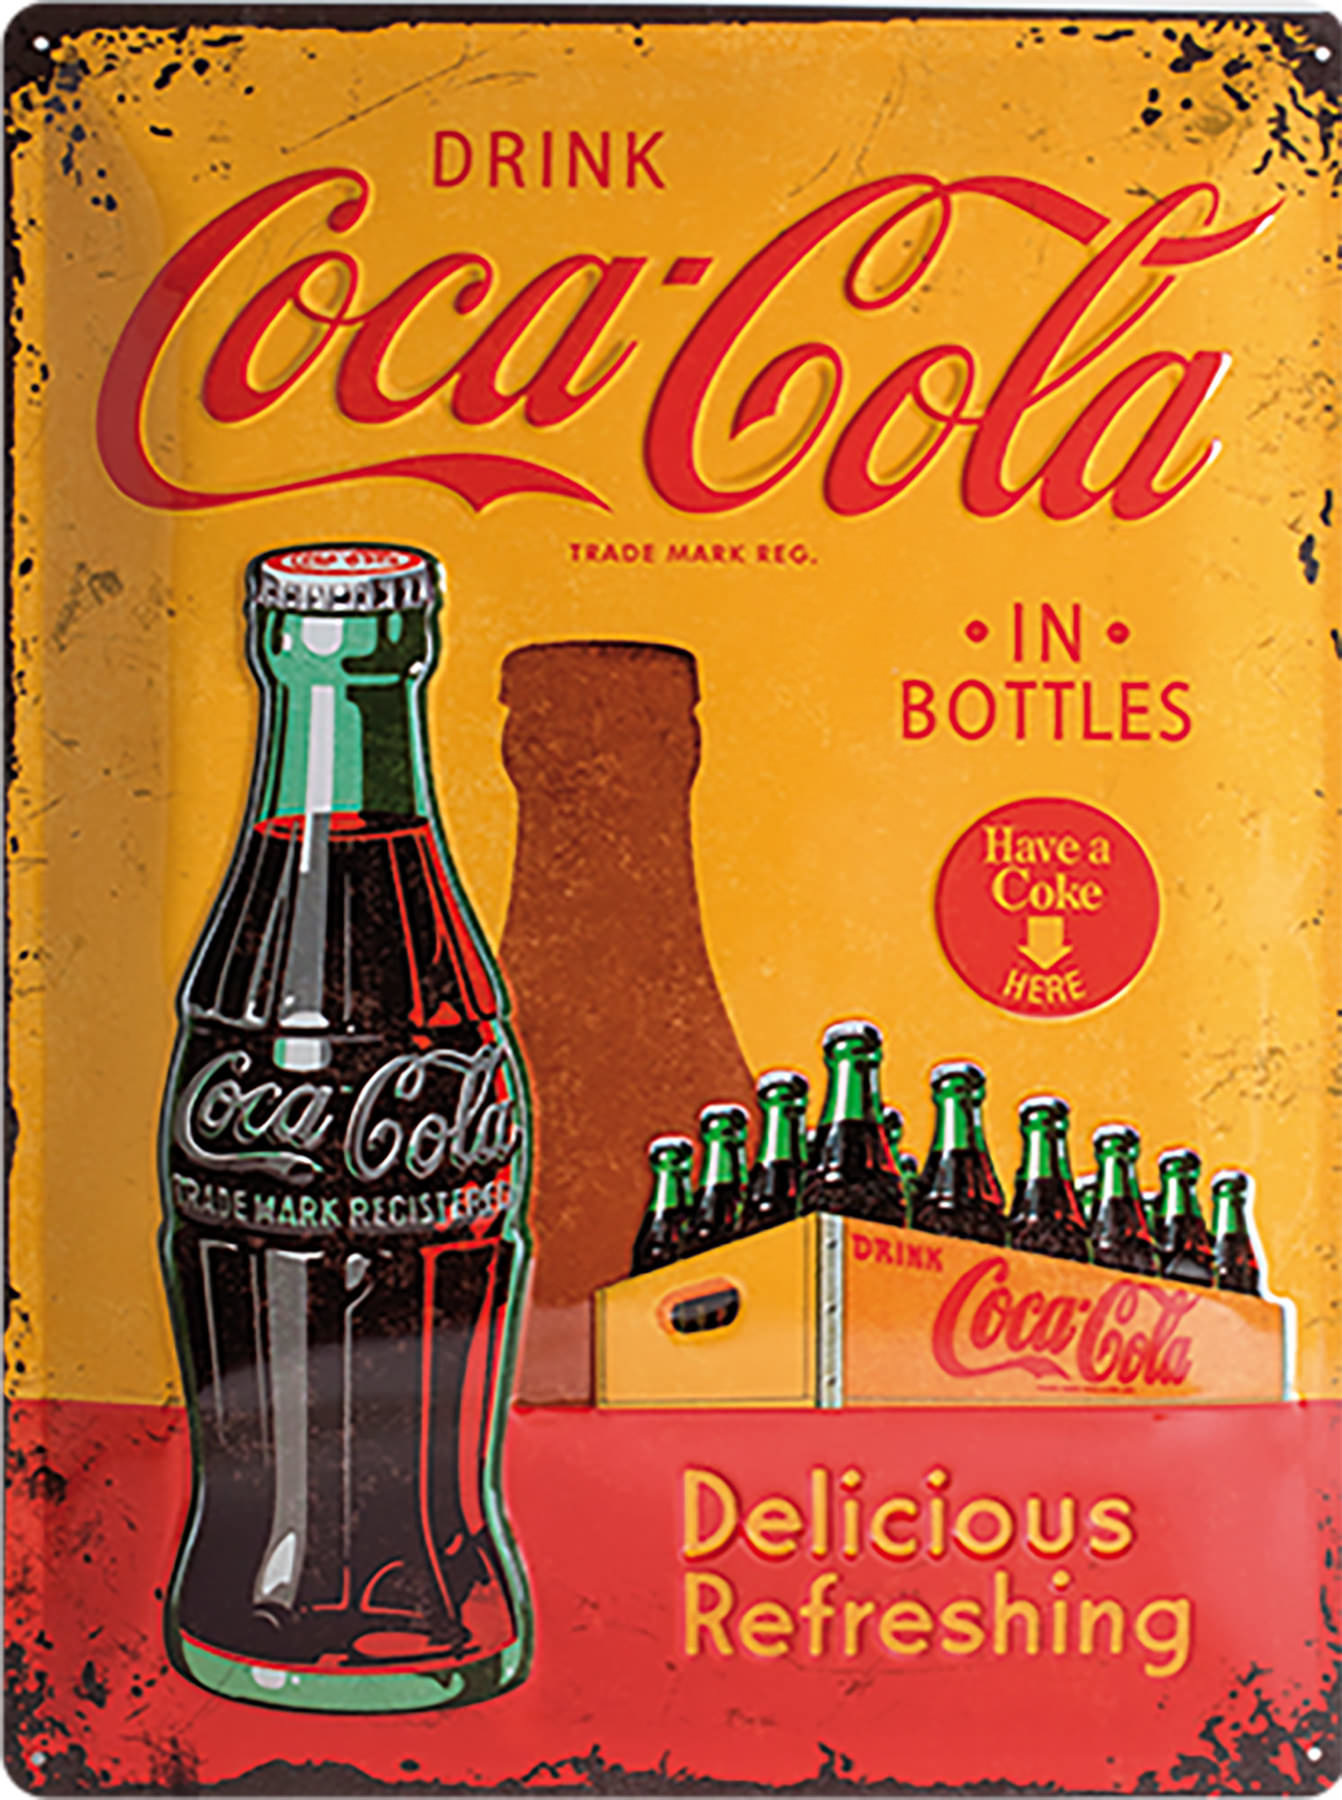 Coca-Cola Corrugated Metal Sign Drink Coca-Cola Delicious and Refreshing 